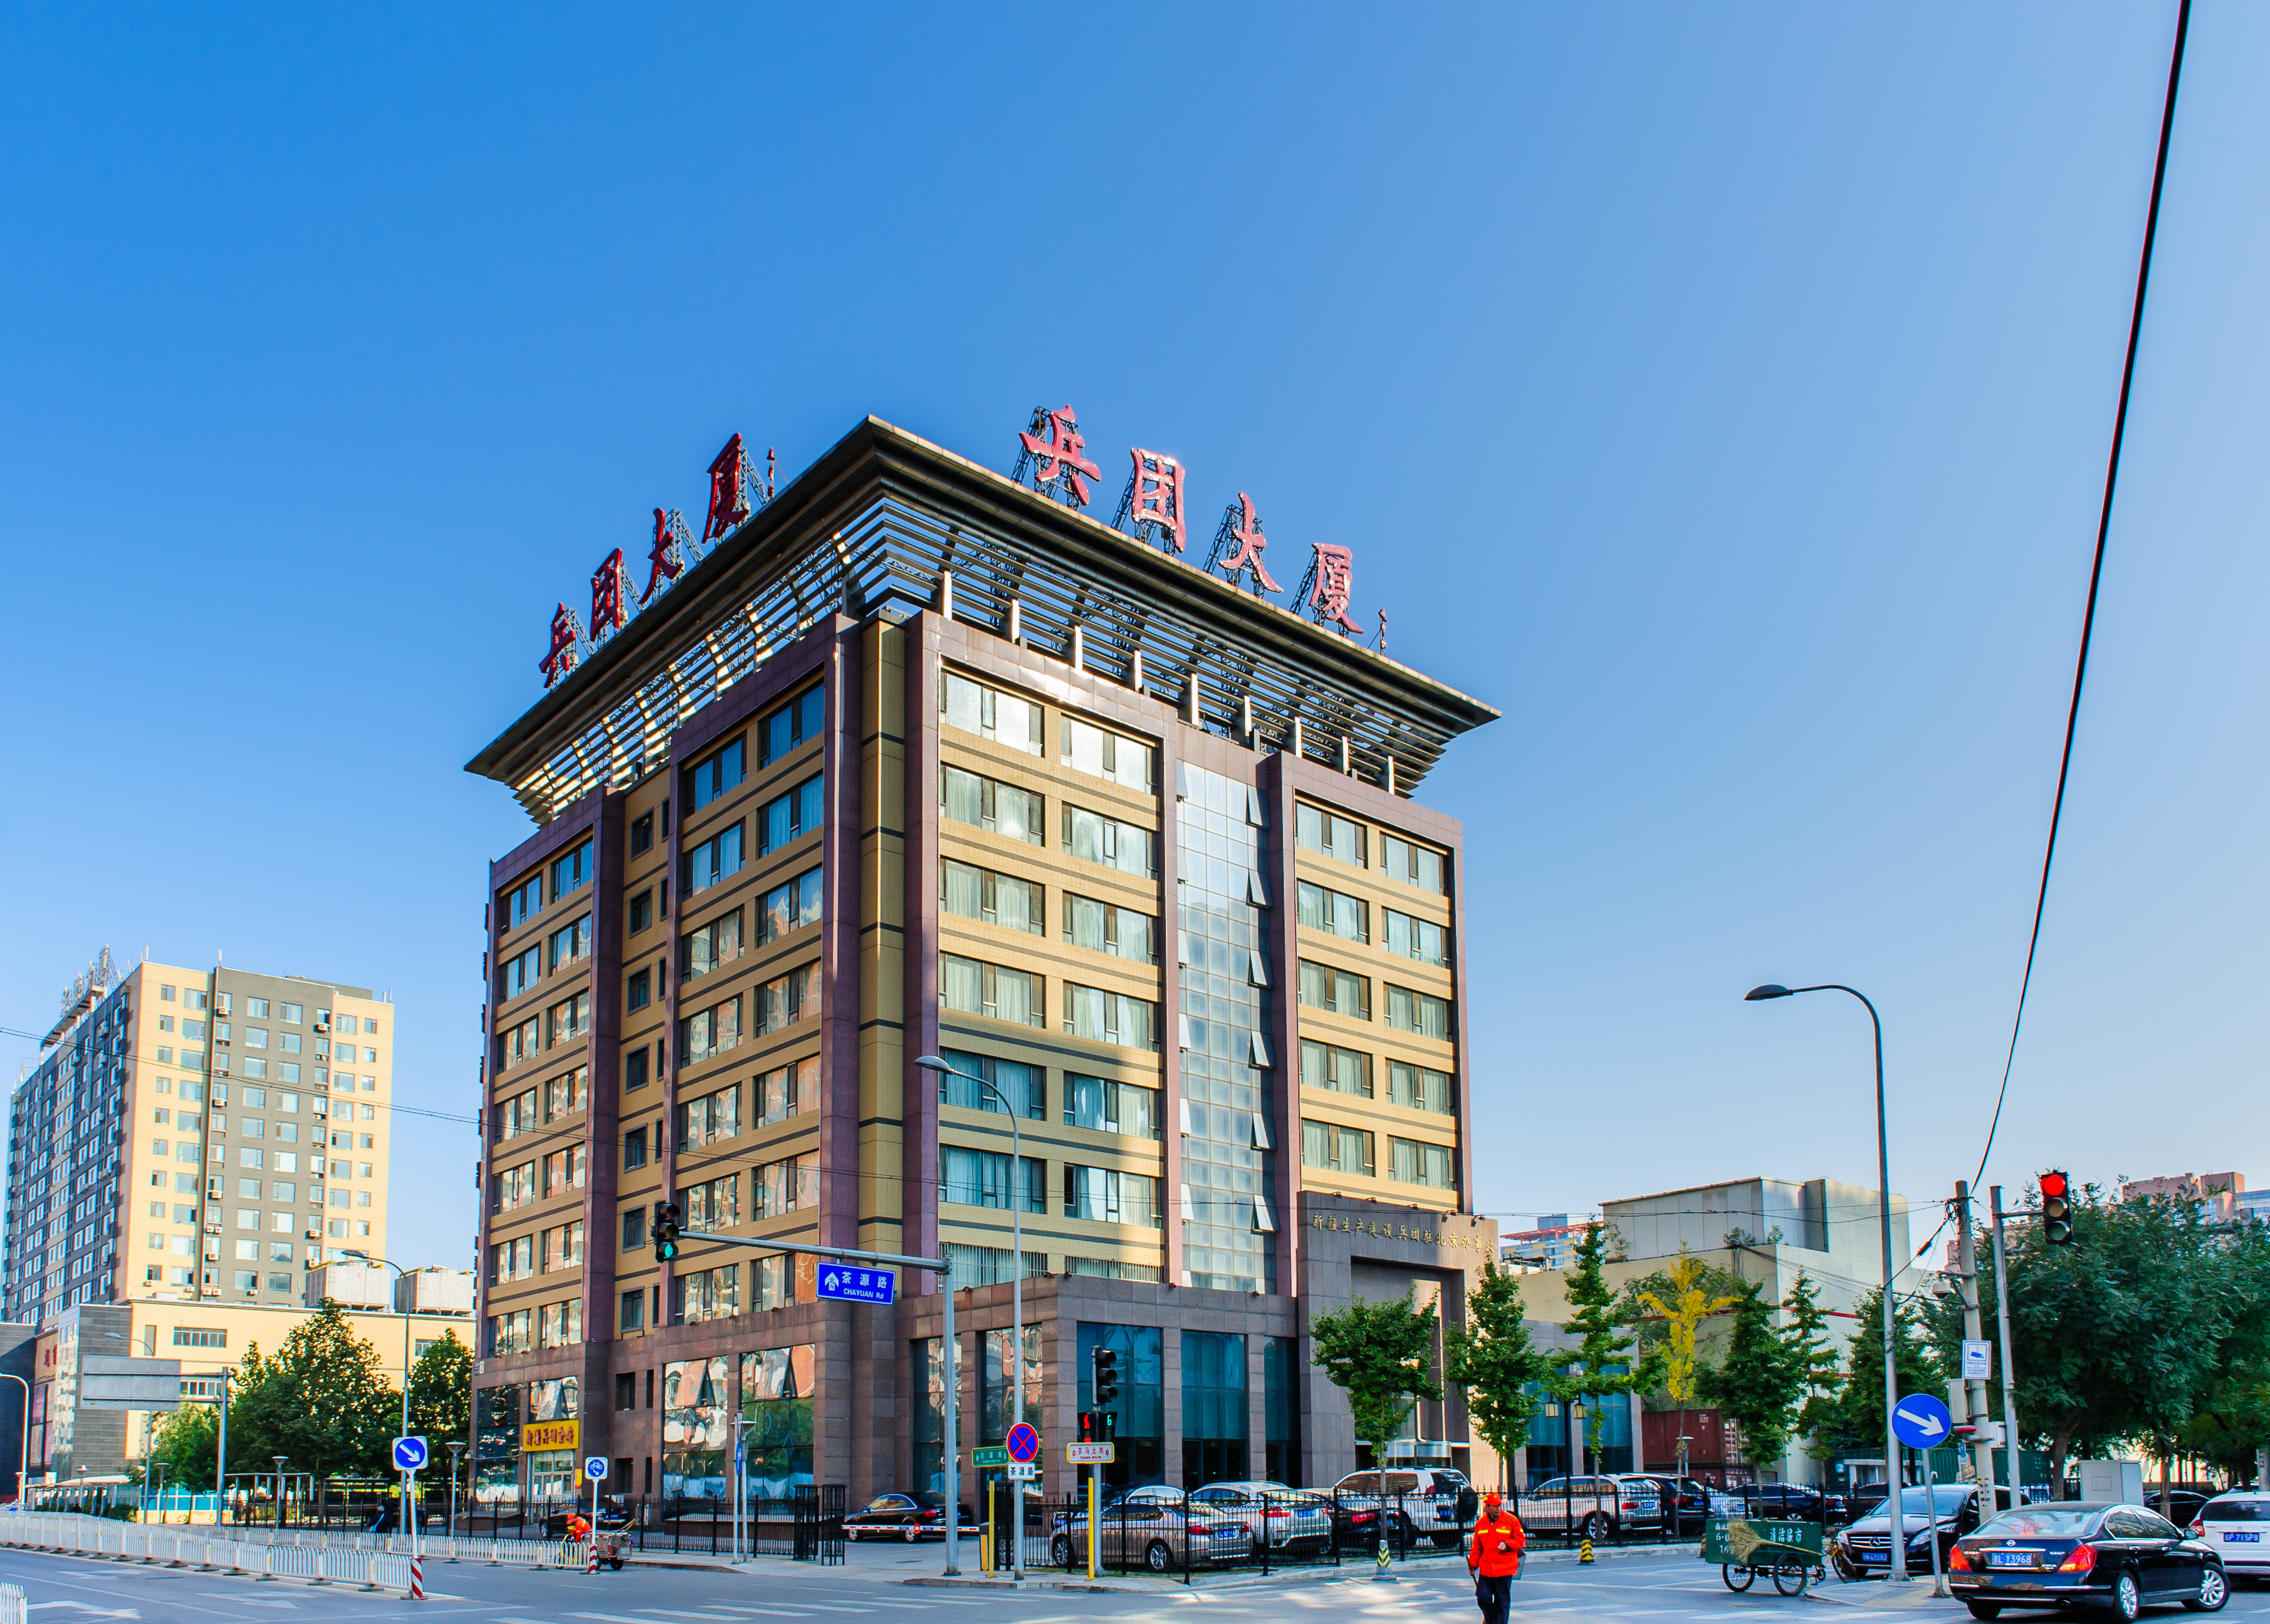 北京兵团大厦